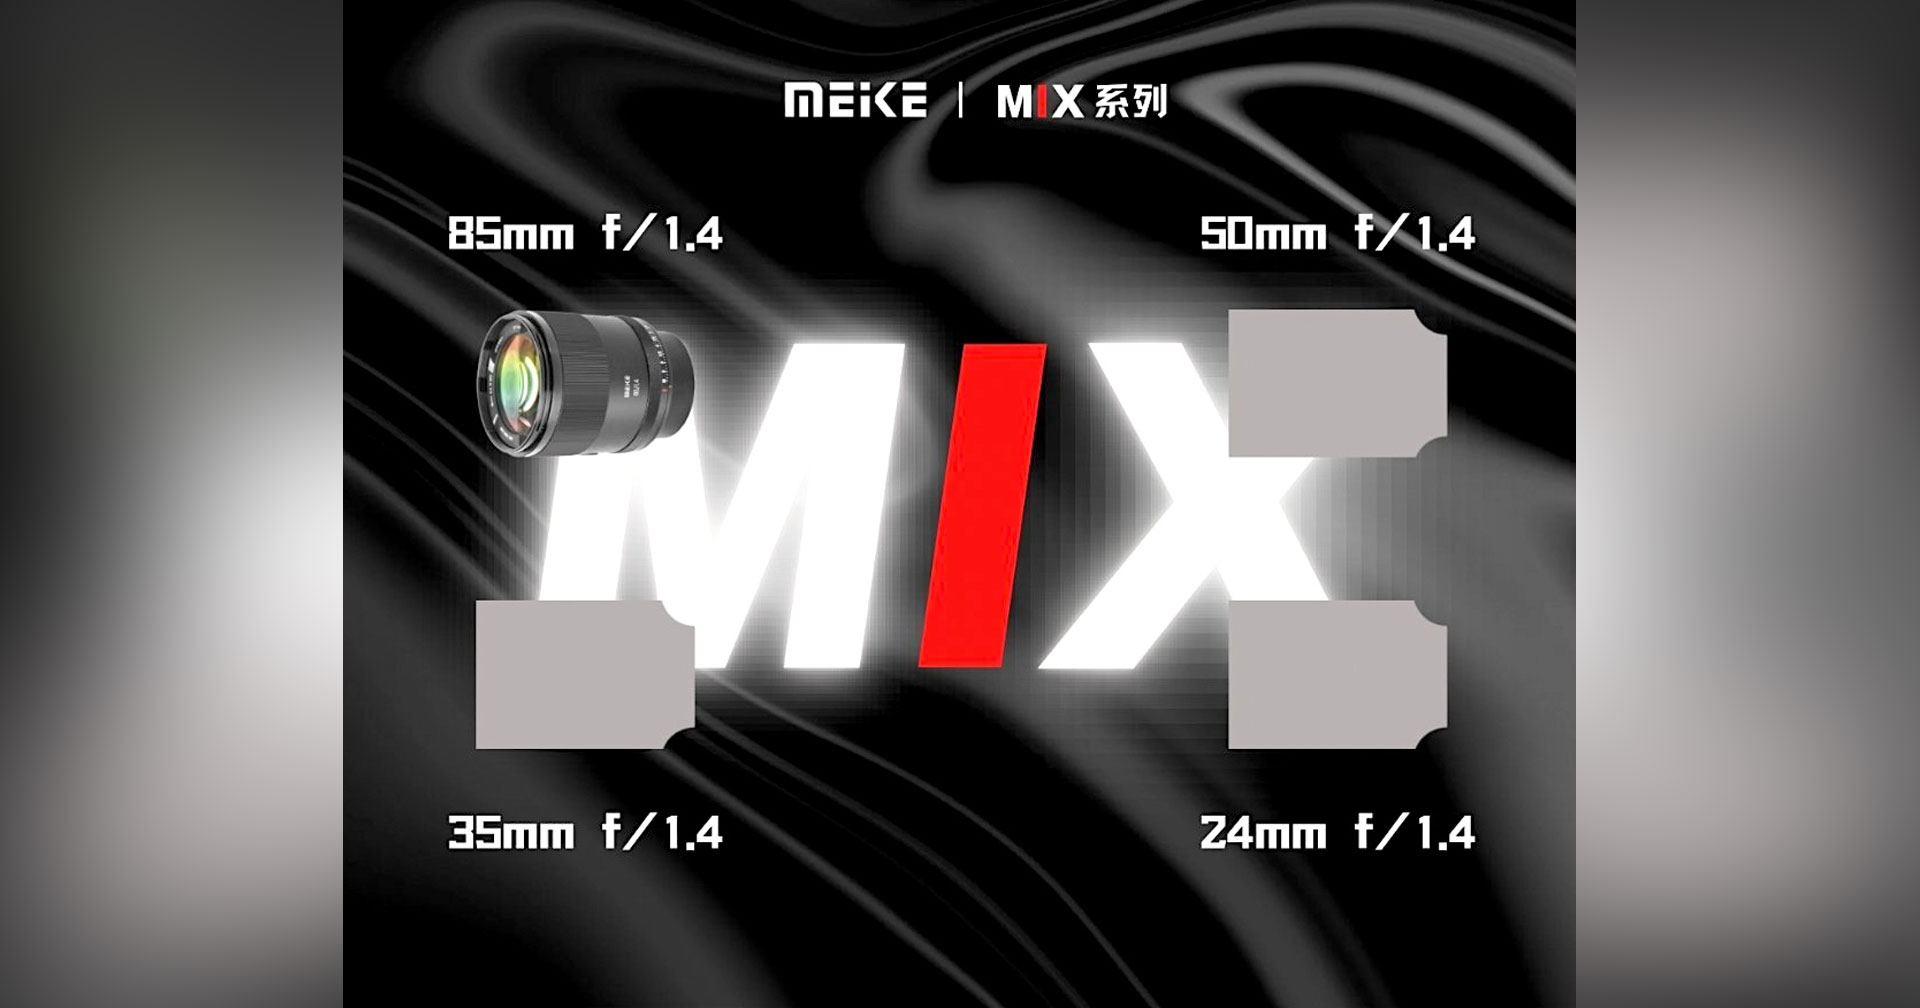 เผย Meike Roadmap เตรียมเปิดตัวเลนส์ซีรีส์ F1.4 ถึง 3 รุ่น เมาท์ Sony E และ Nikon Z